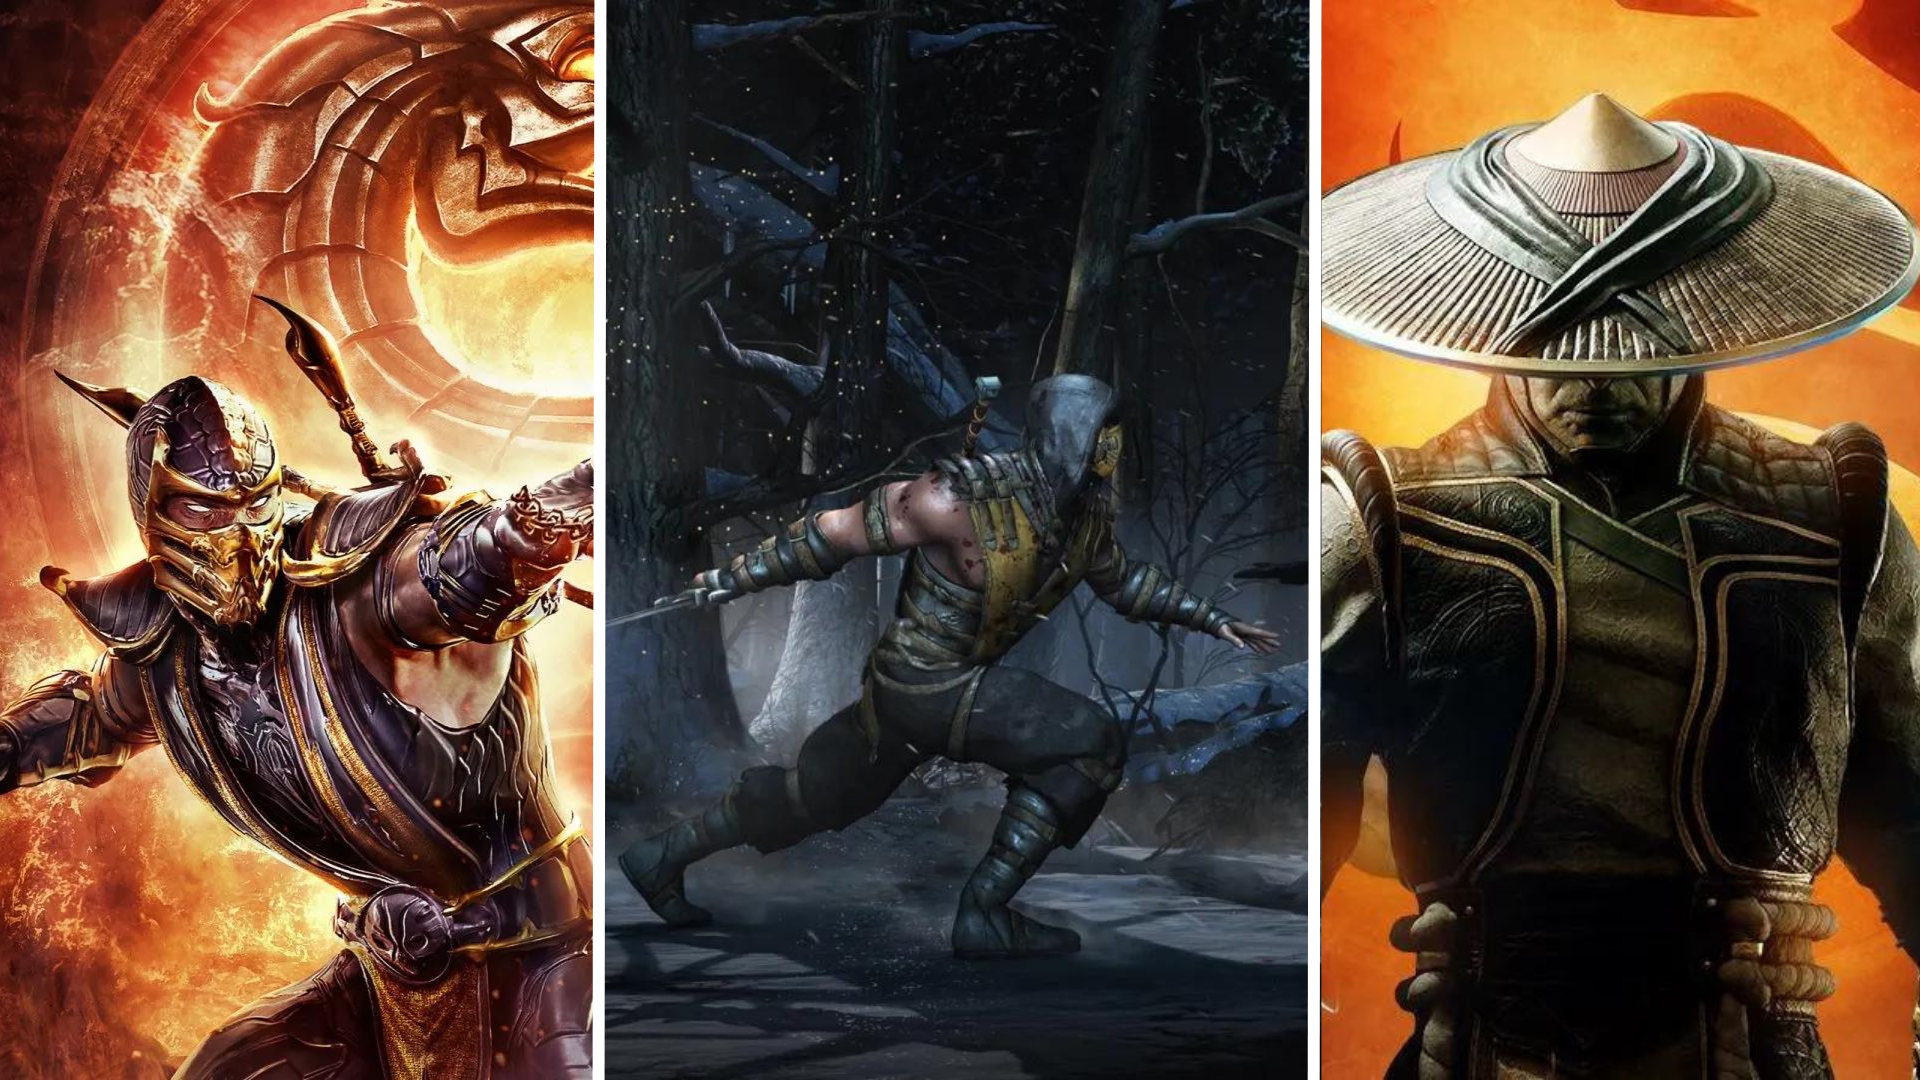 Veja todos os personagens presentes em Mortal Kombat 1 - Avance News